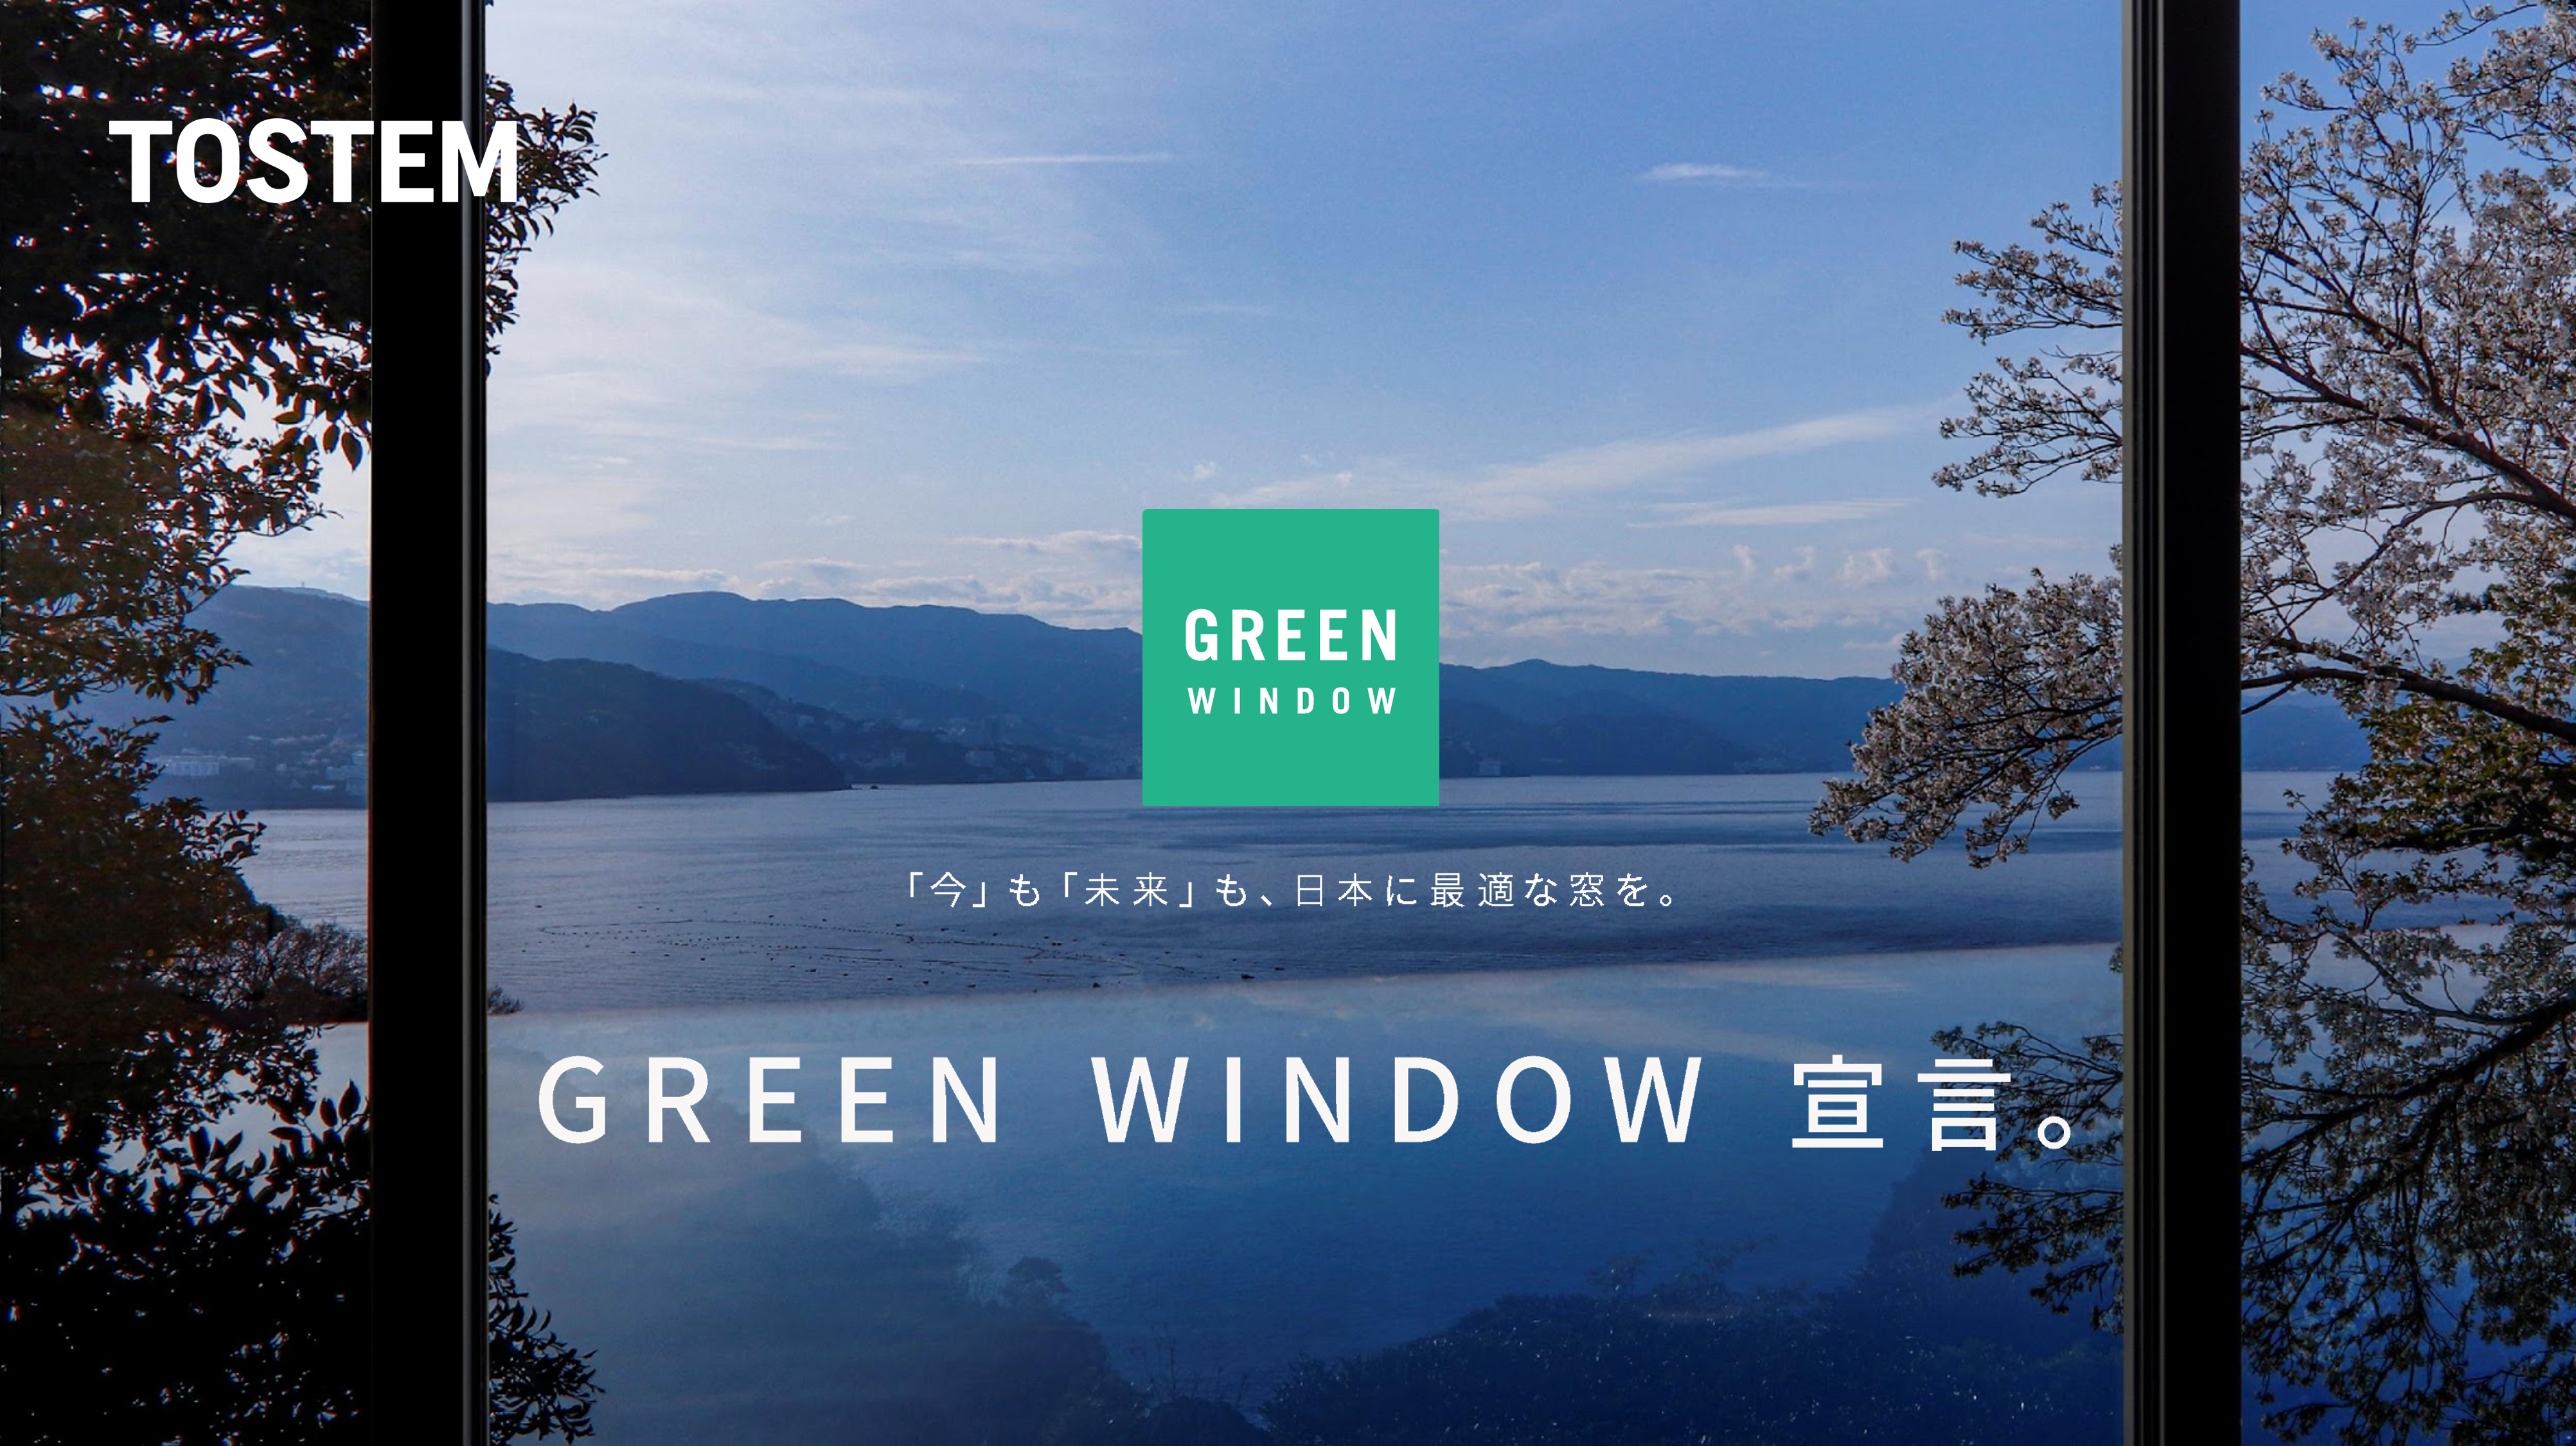 環境負荷を低減する、地域に最適な窓を『GREEN WINDOW』と宣言し、展開開始 サムネイル画像